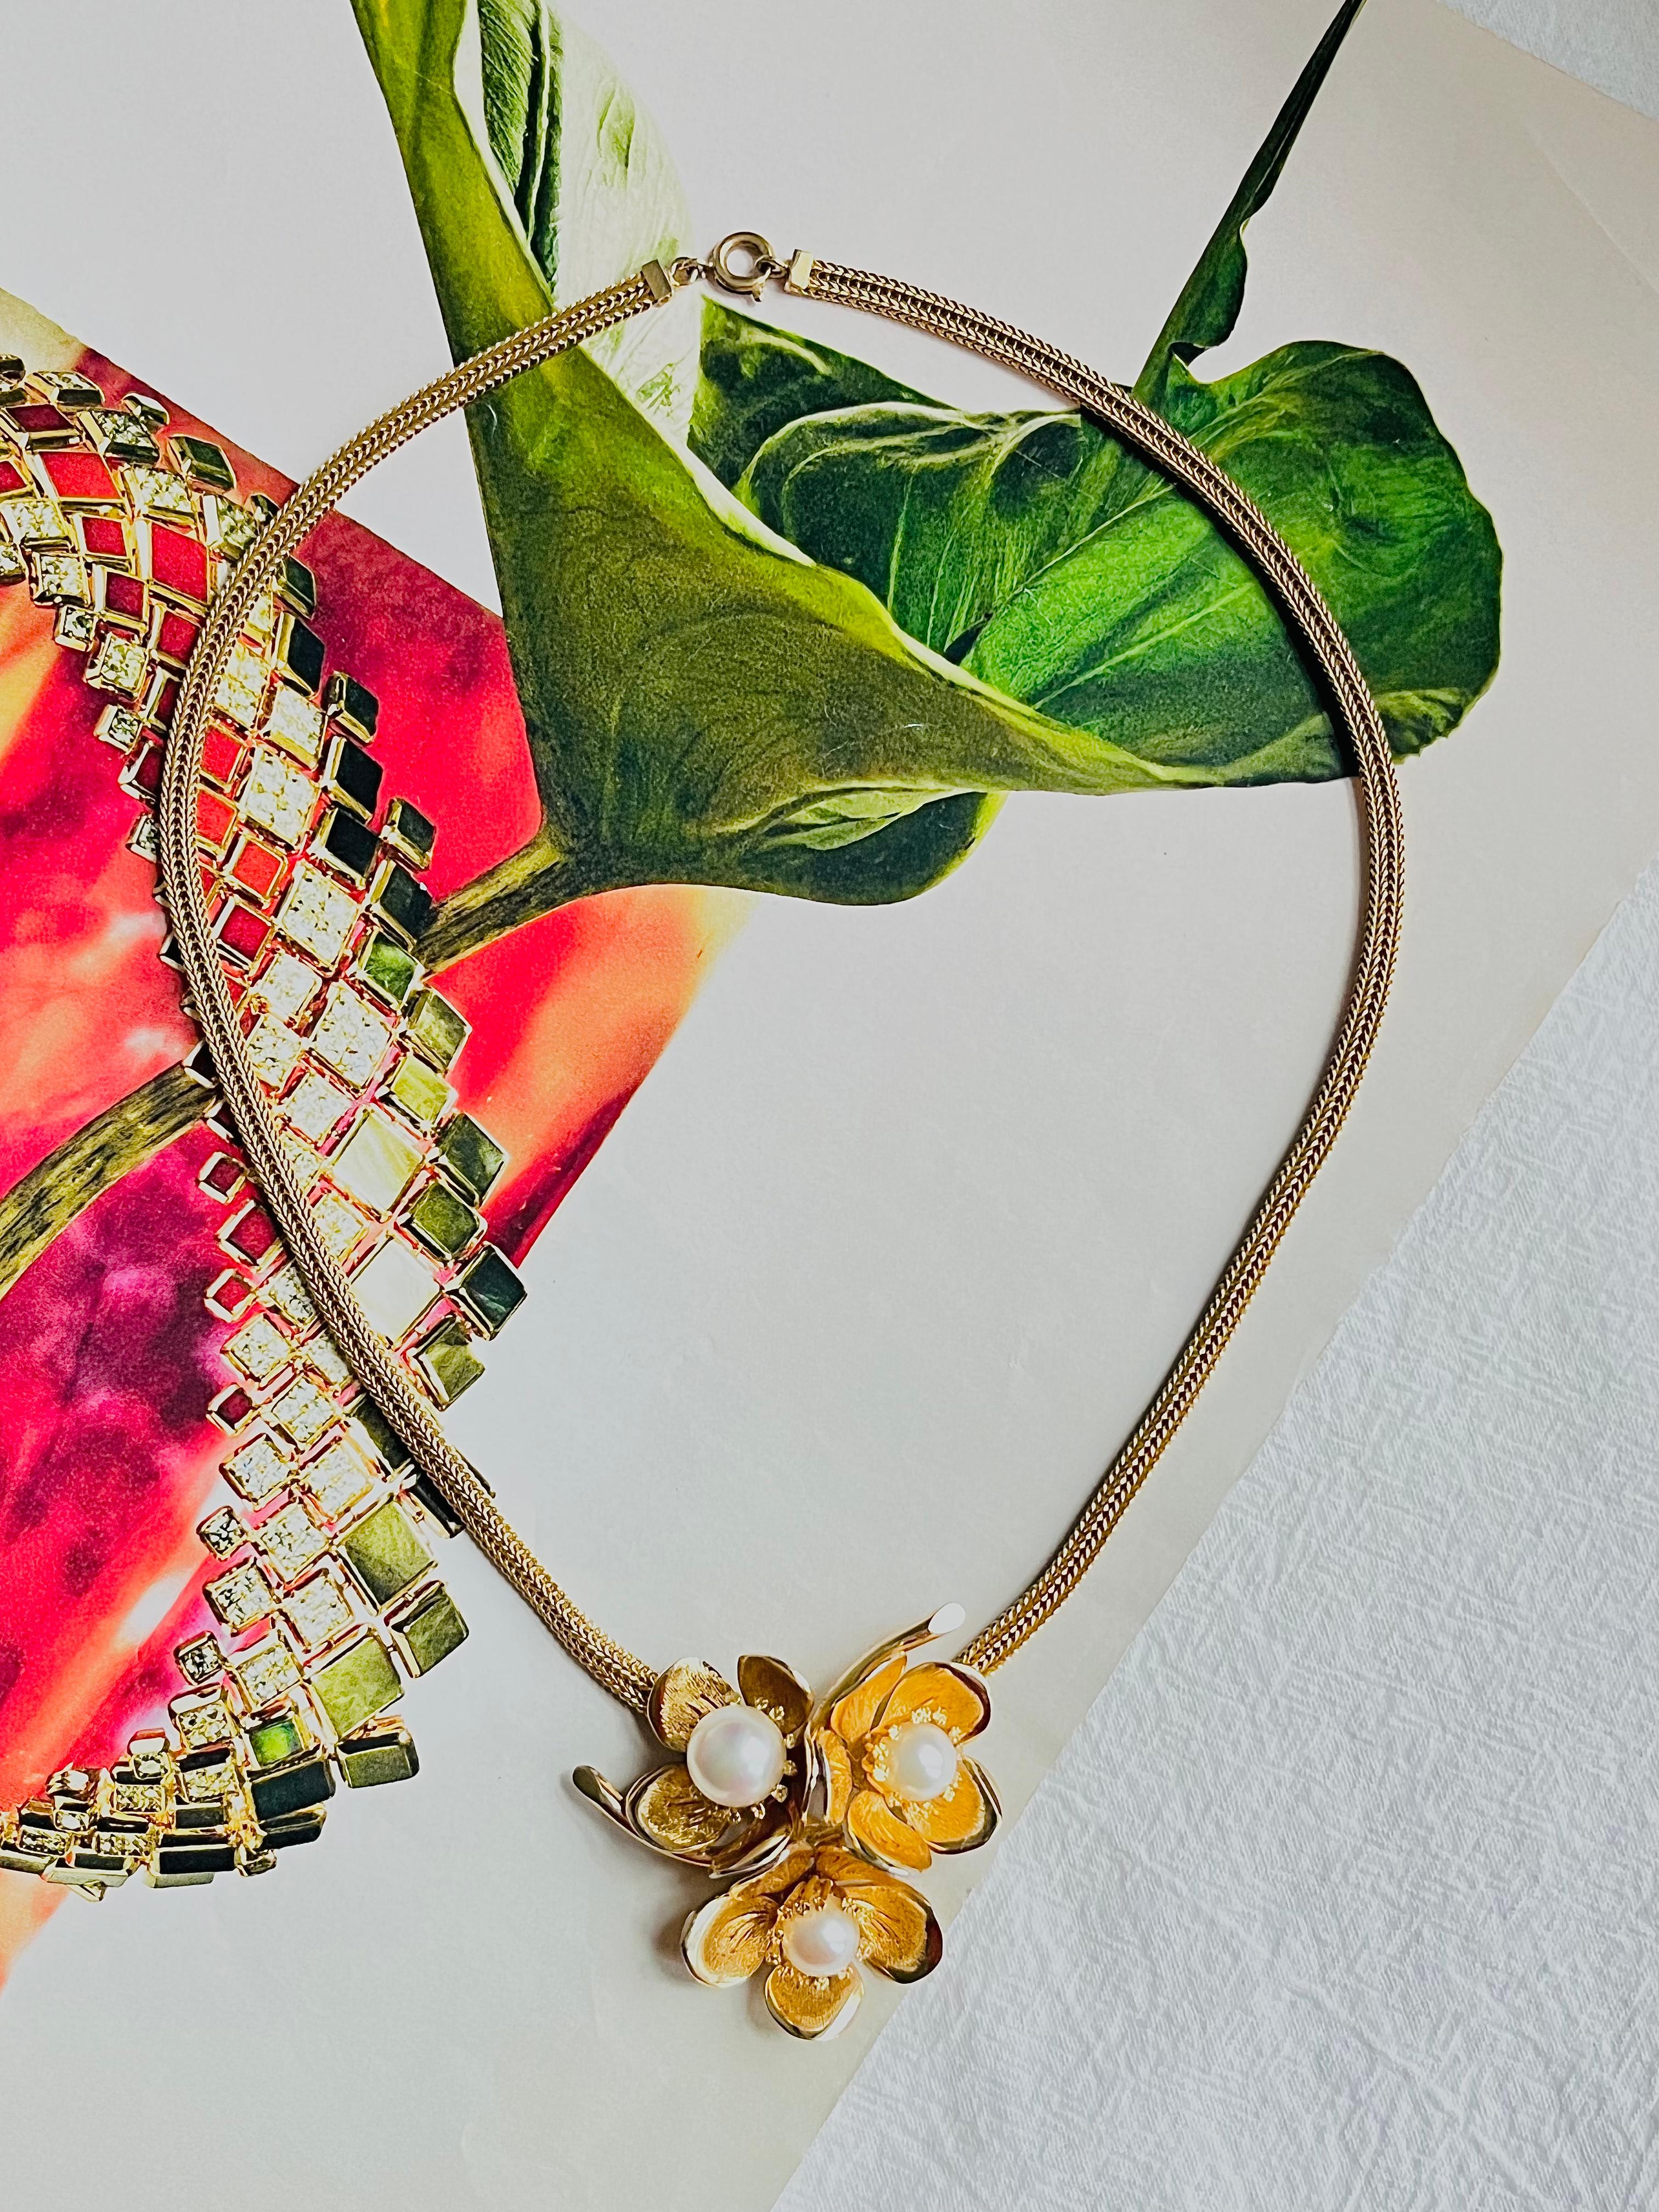 Christian Dior GROSSE 1963 Vintage Trio Weiß Perlen Blumenstrauß Mesh Kette Halskette, vergoldet

Sehr guter Zustand. Signiert Grosse auf der Rückseite. 100% echt. Selten zu finden.

Größe: 38* 0,4 cm. Anhänger: 4,5*4,5 cm.

Gewicht: 26 g.

_ _